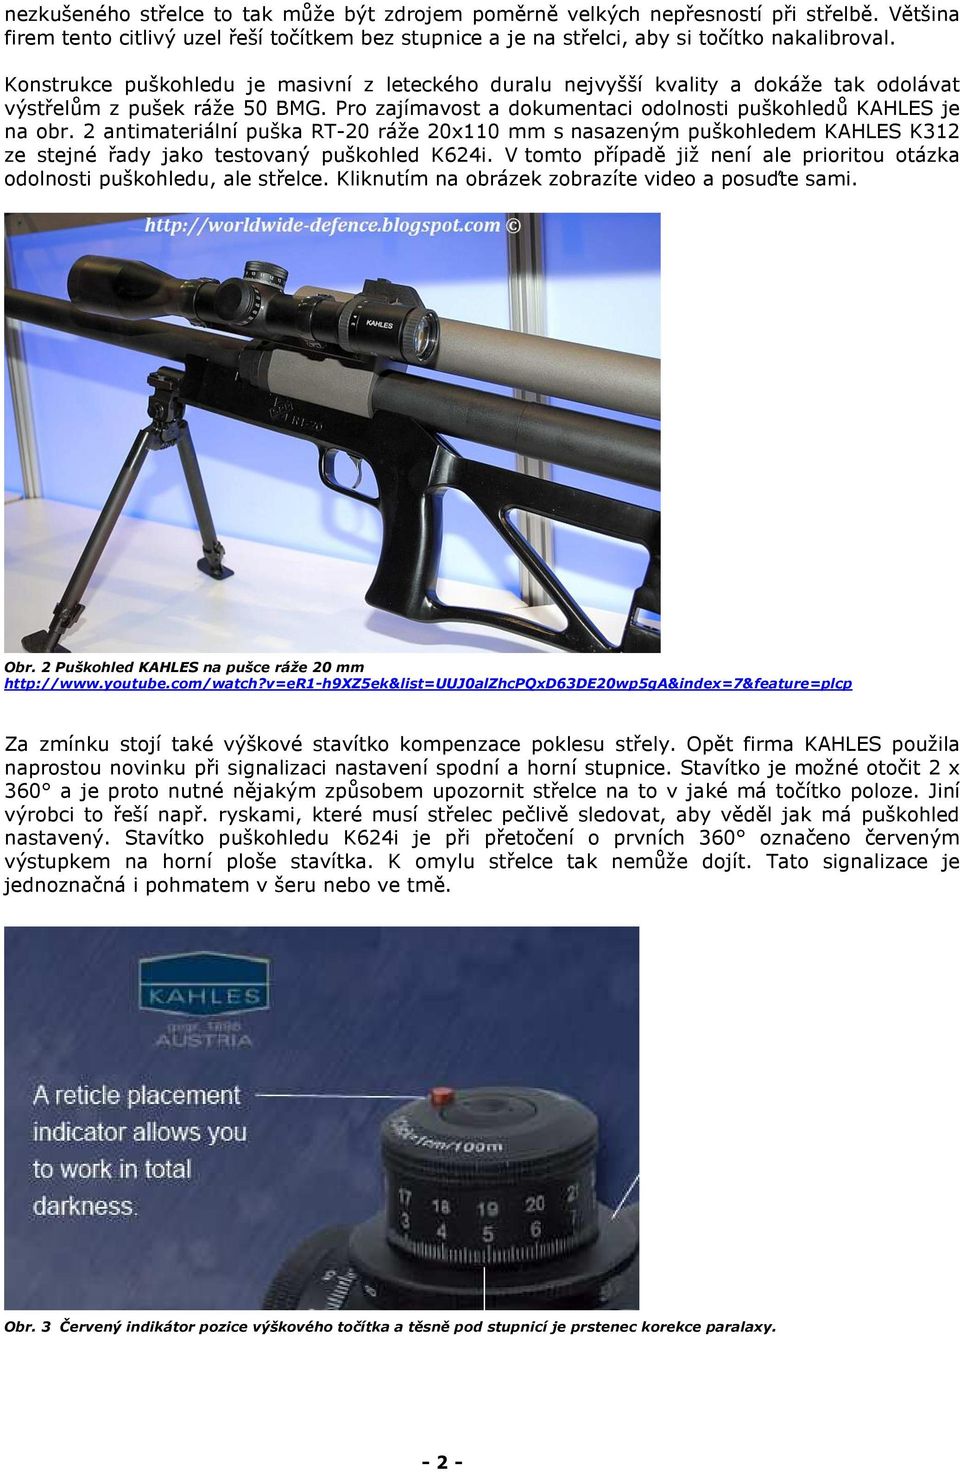 2 antimateriální puška RT-20 ráže 20x110 mm s nasazeným puškohledem KAHLES K312 ze stejné řady jako testovaný puškohled K624i.